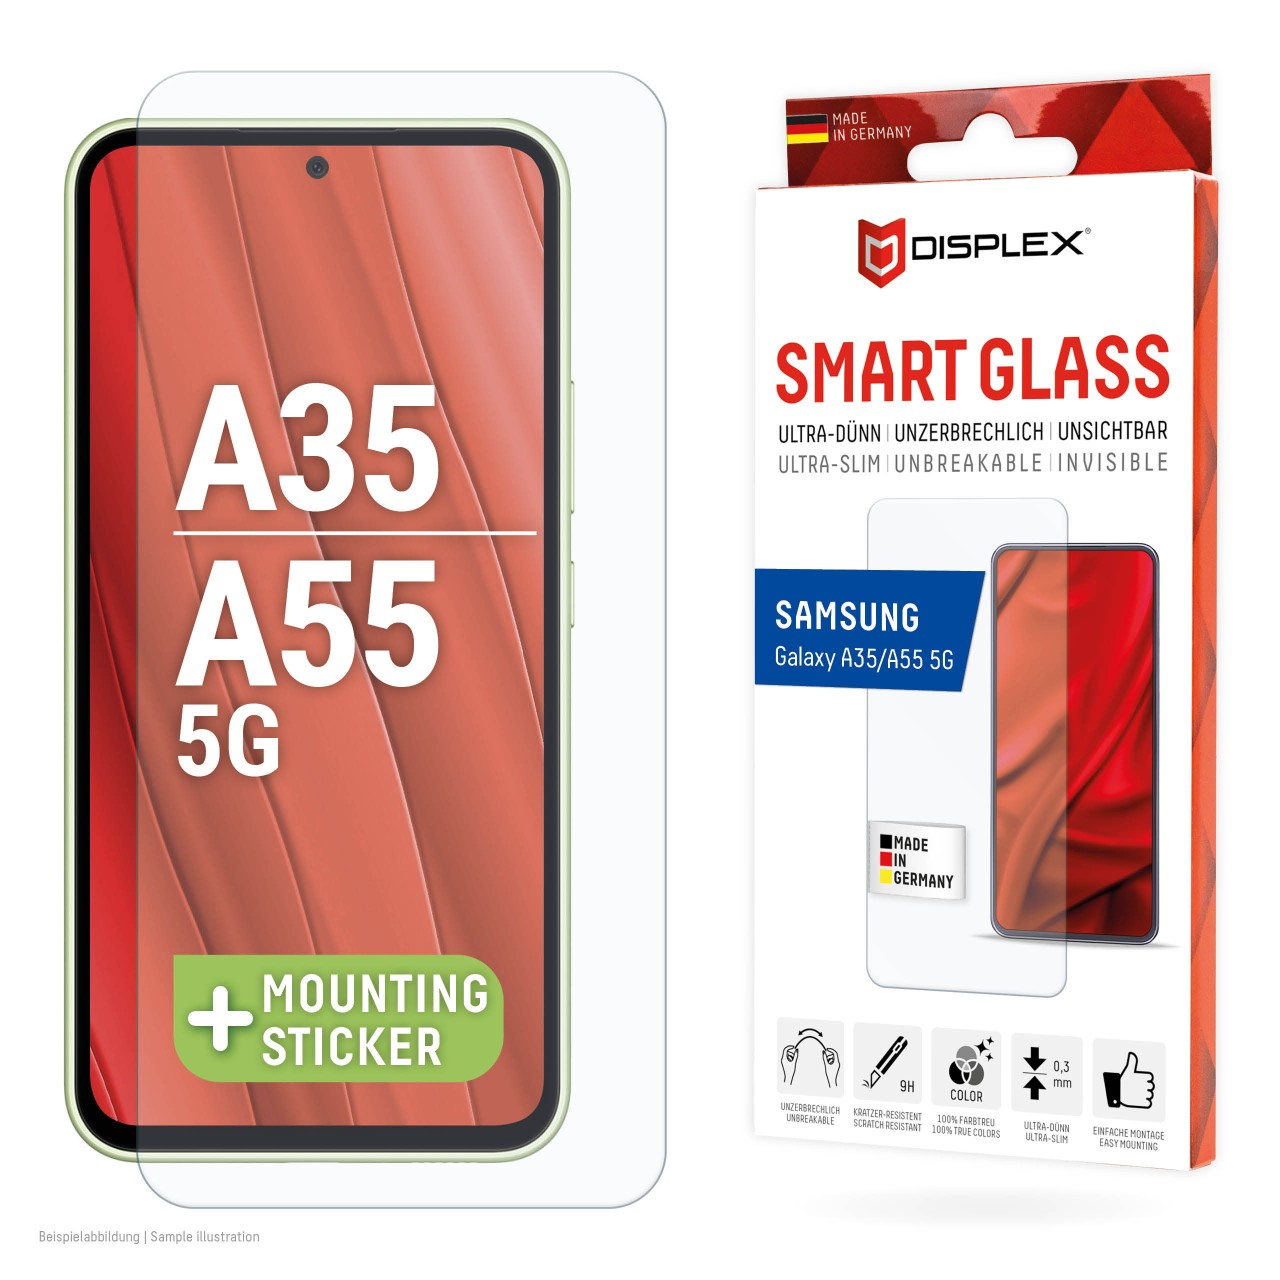 Samsung Galaxy A35/A55 5G Smart Glass